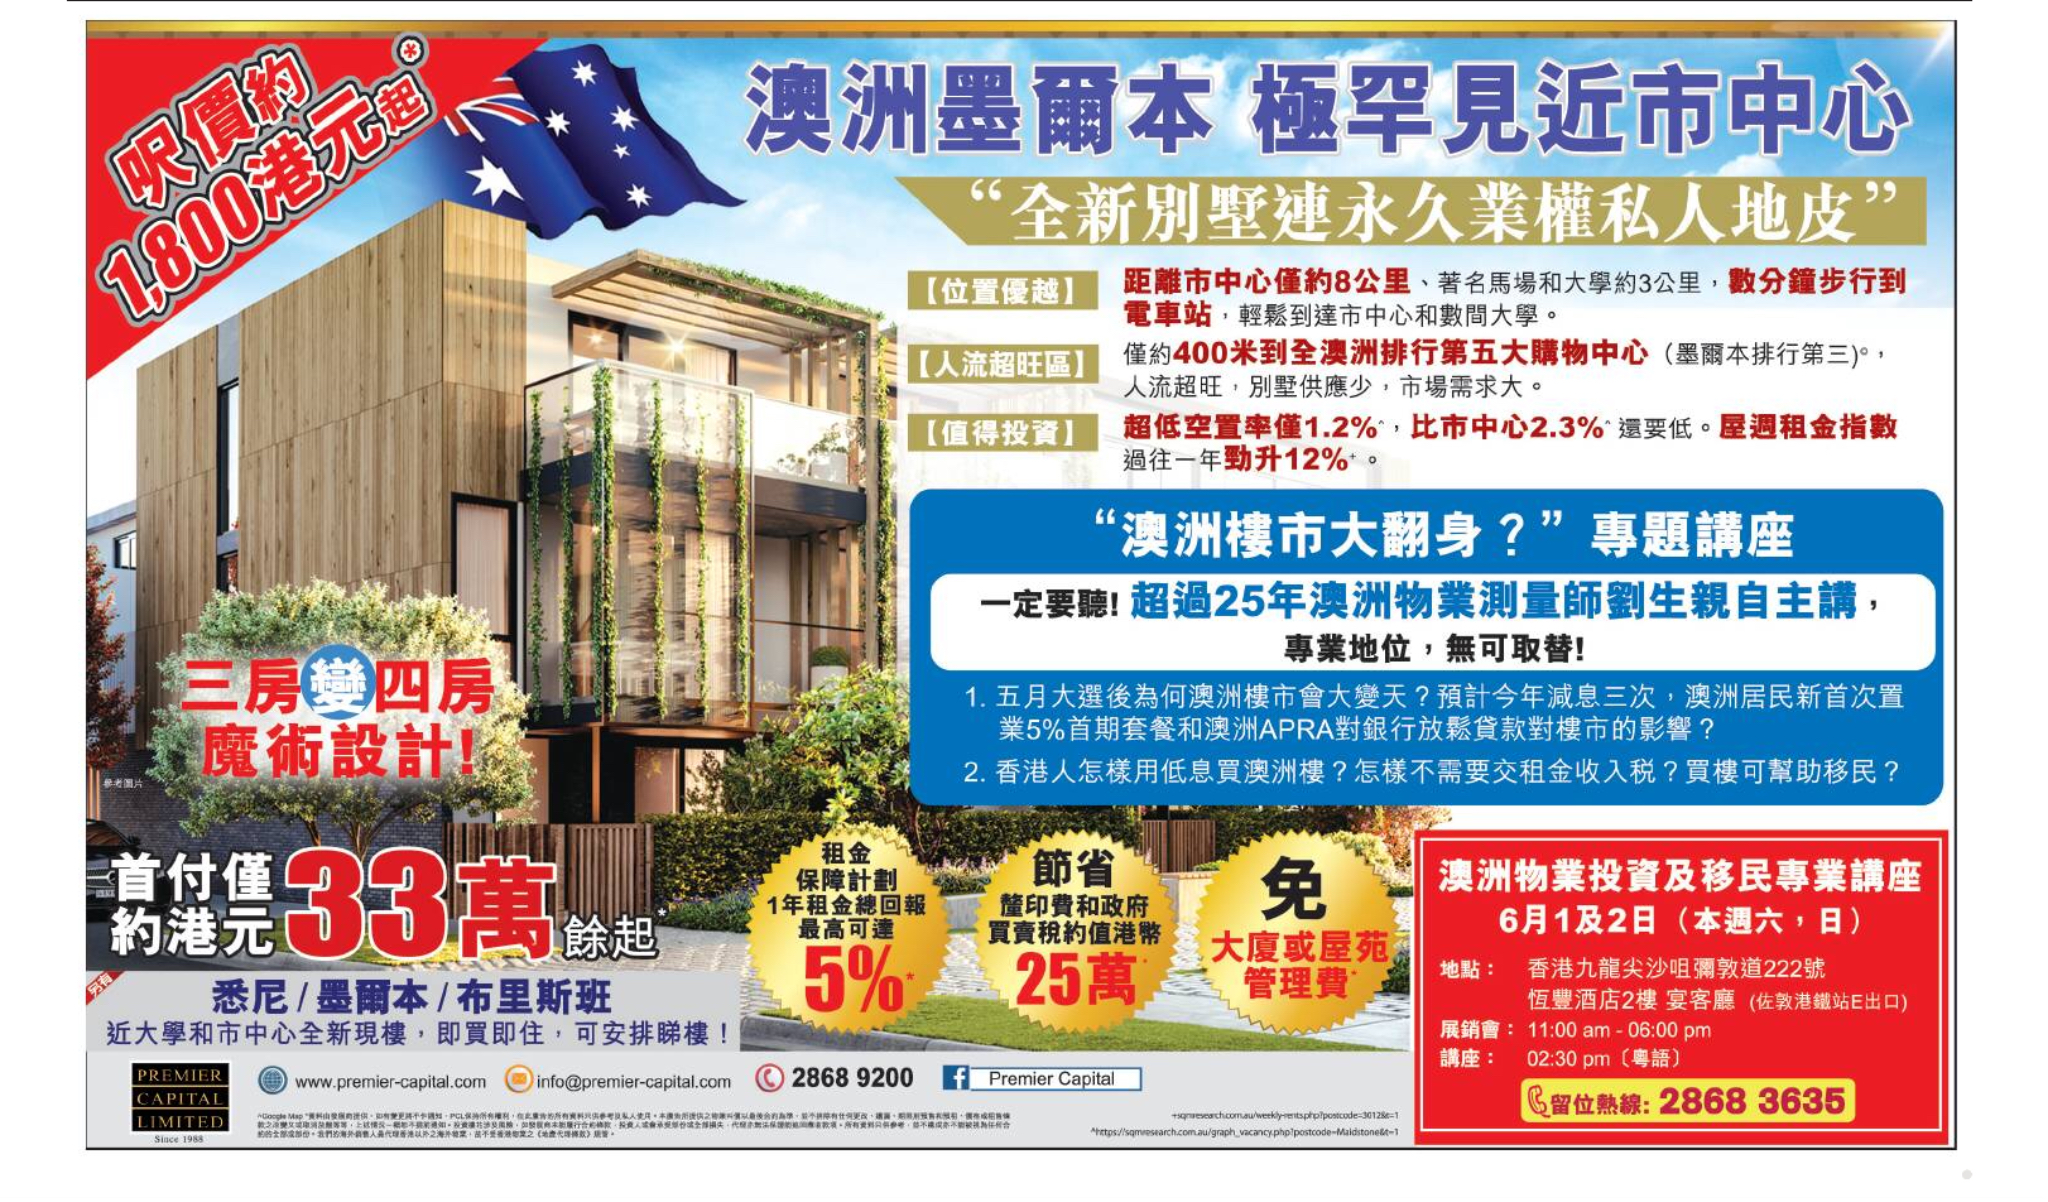 香港地產代理網 HK Estate Agent 最新住宅、商舖、村屋、車位、工業大廈資訊: 澳洲墨爾本